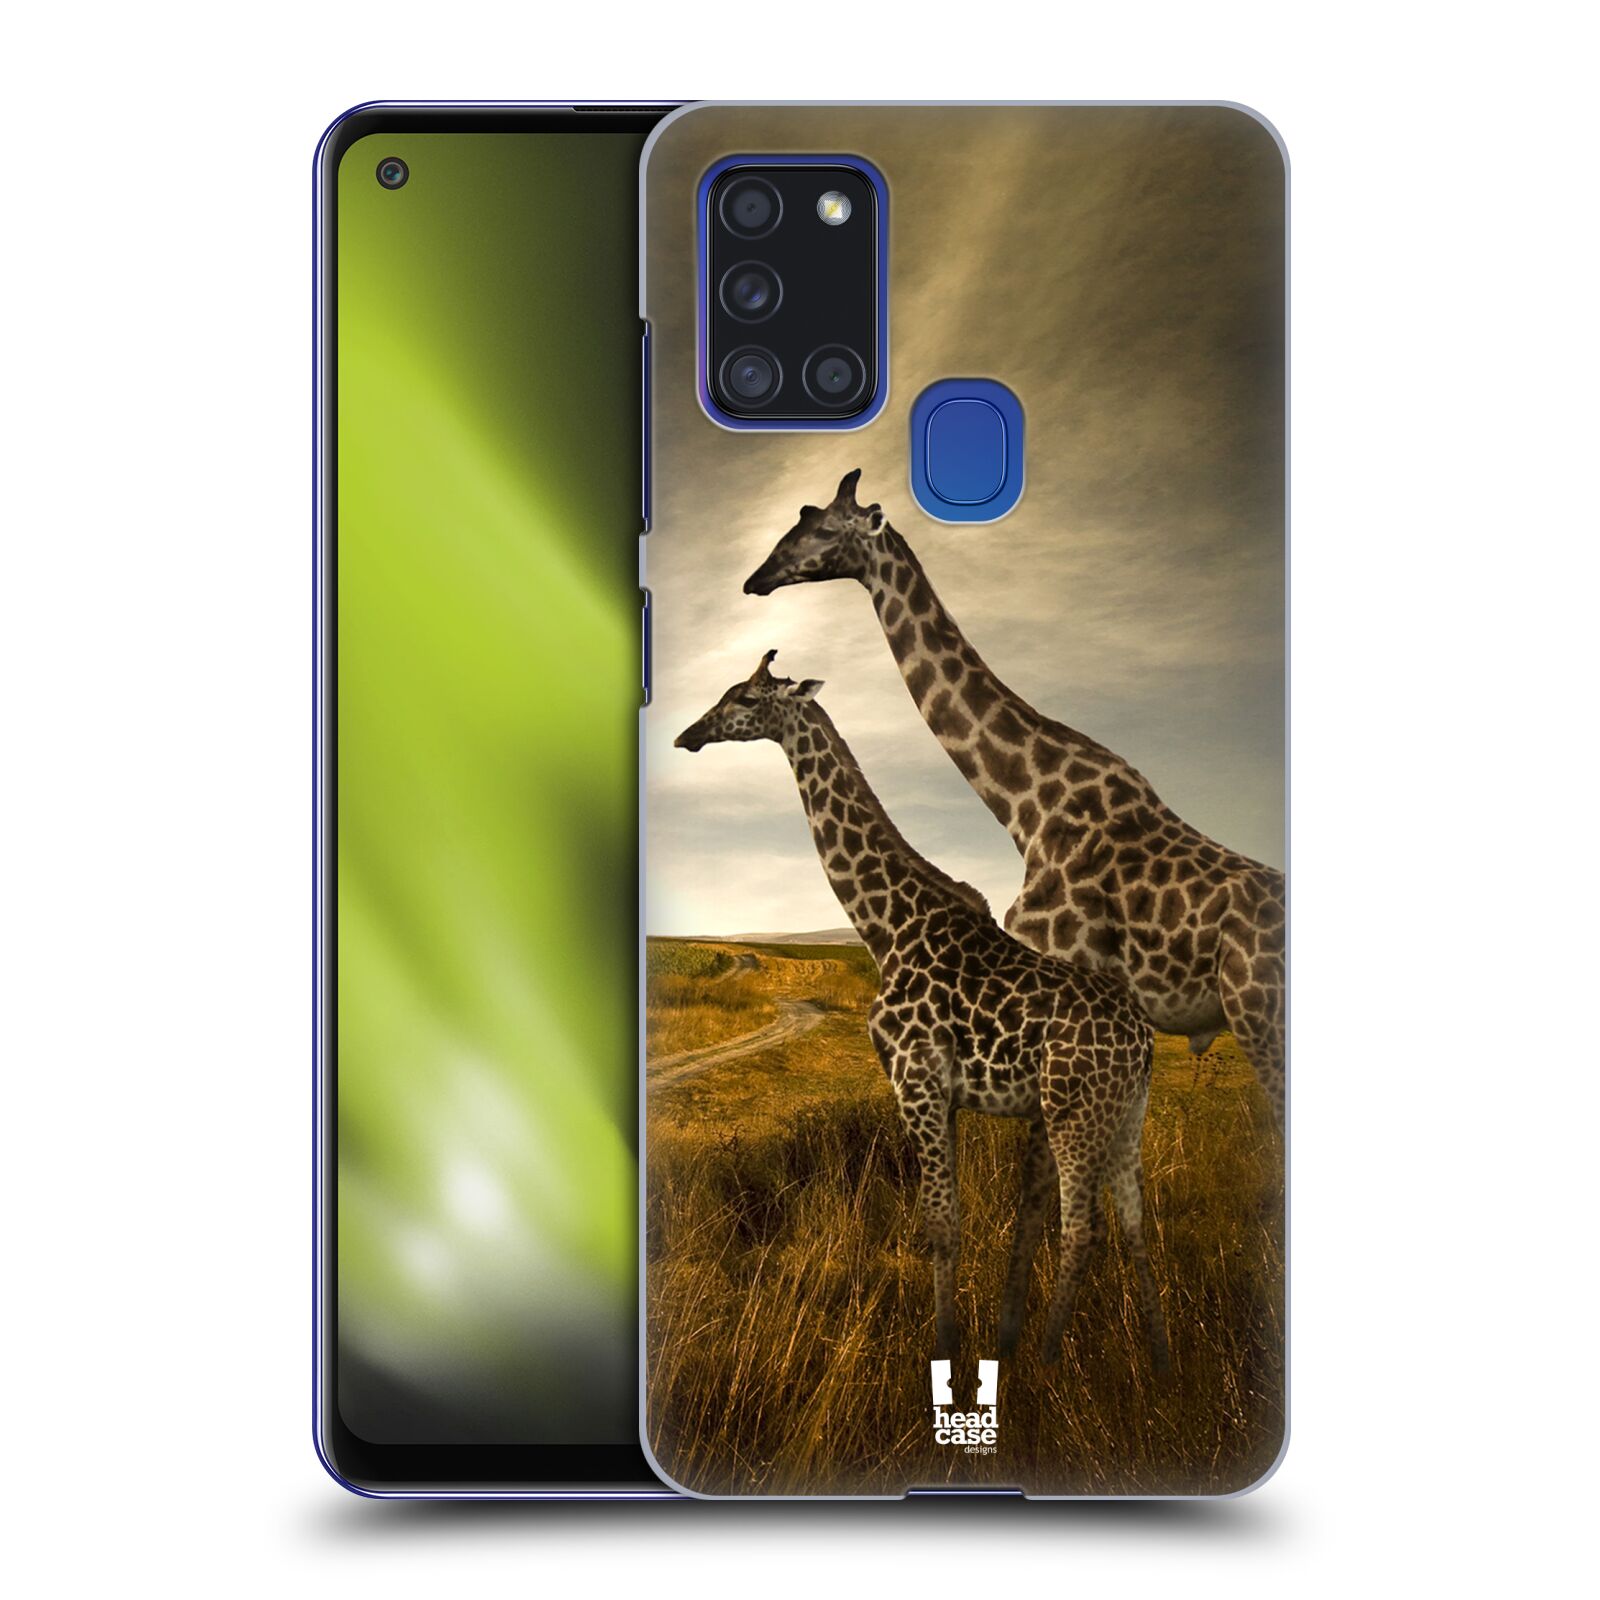 Zadní obal pro mobil Samsung Galaxy A21s - HEAD CASE - Svět zvířat žirafy